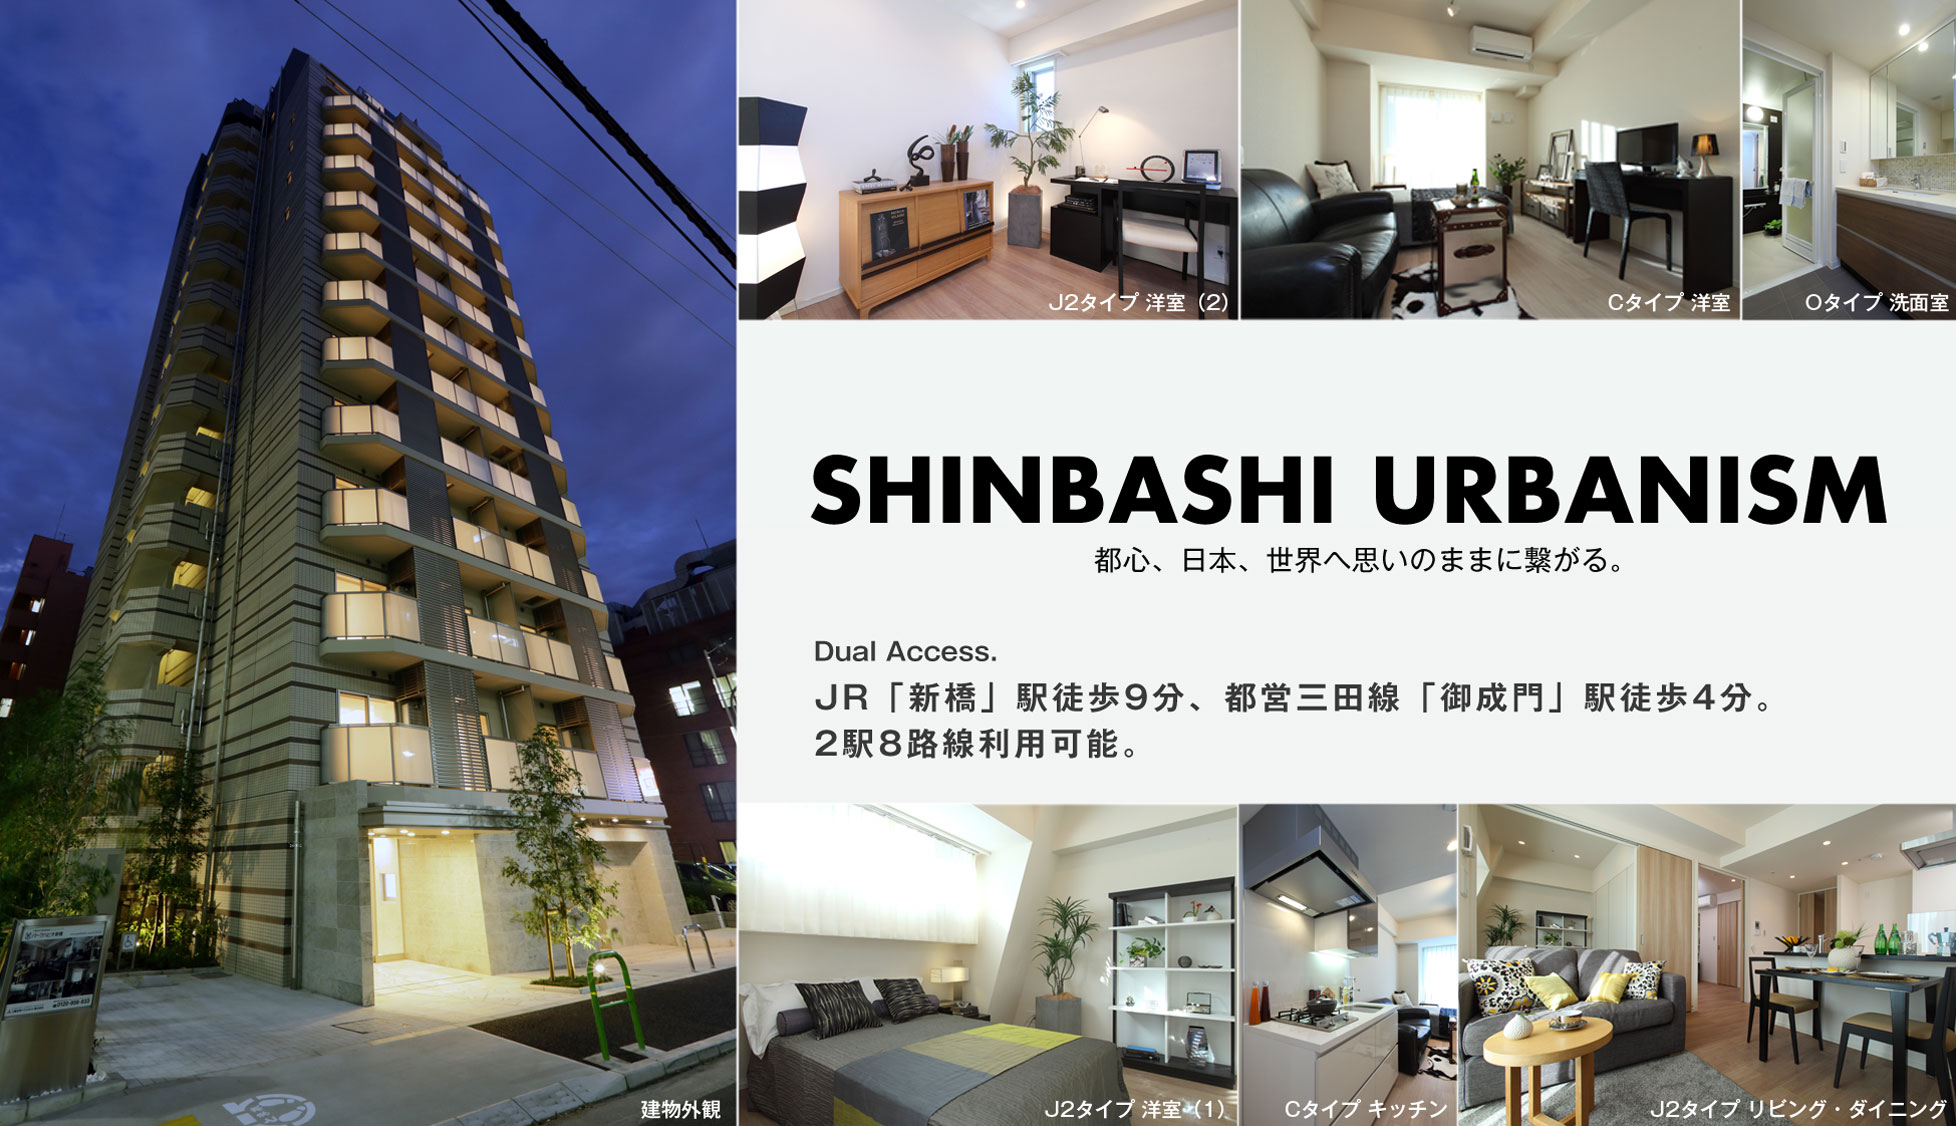 SHINBASHI URBANISM 都心、日本、世界へ思いのままに繋がる。Dual Access. JR「新橋」駅徒歩9分、都営三田線「御成門」駅徒歩4分。2駅8路線利用可能。